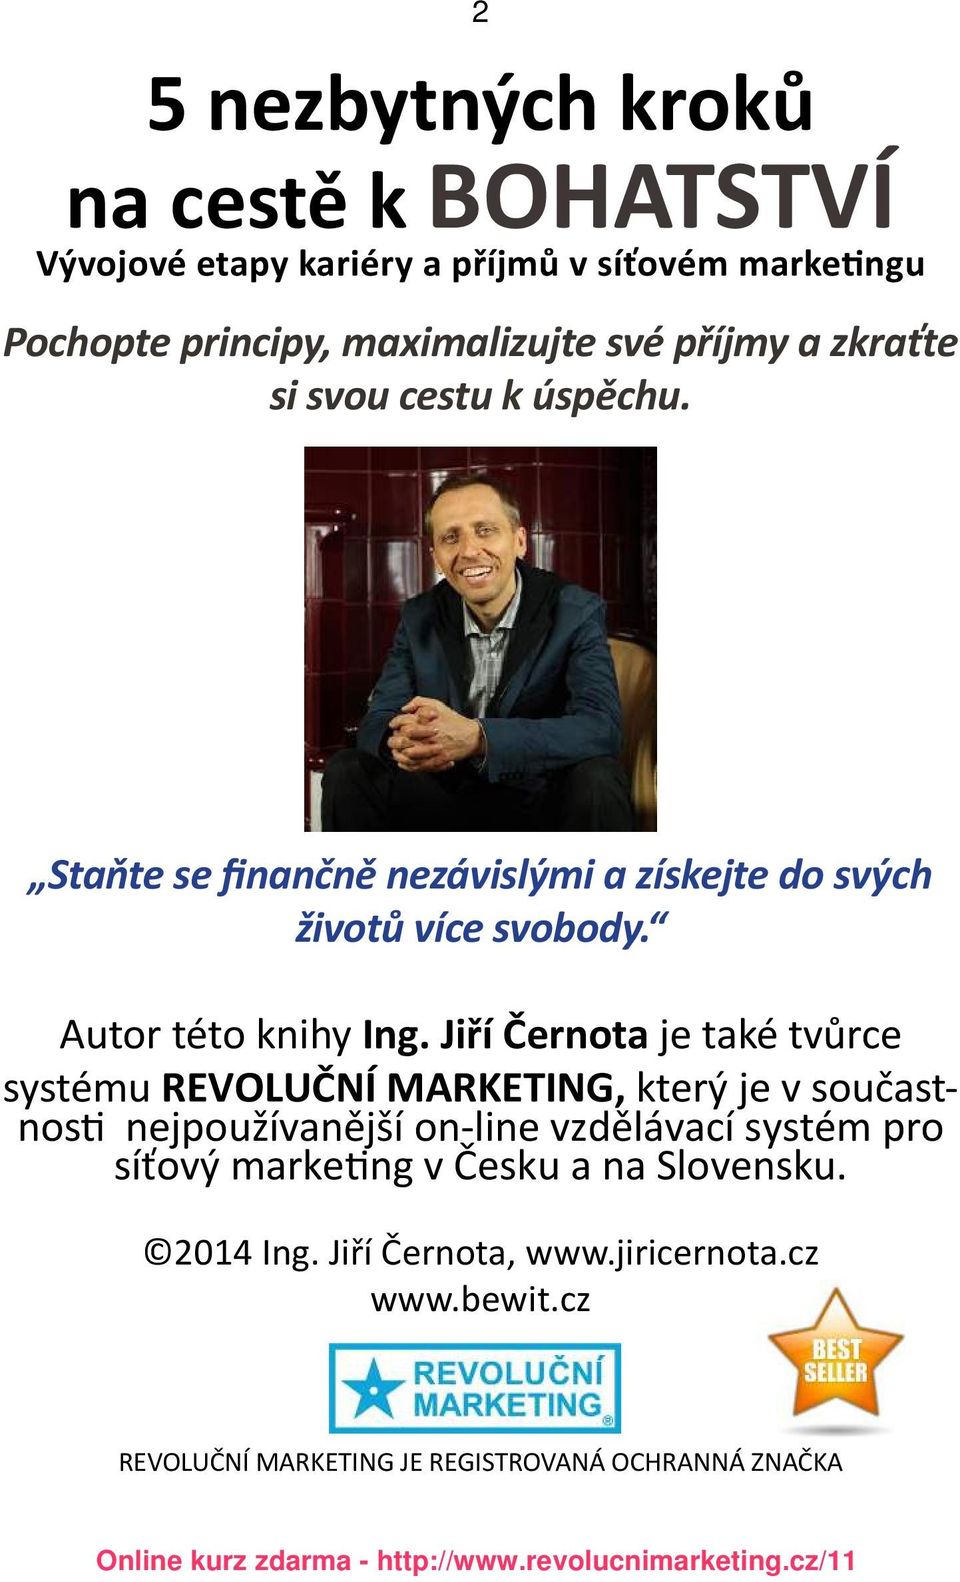 Jiří Černota je také tvůrce systému REVOLUČNÍ MARKETING, který je v součastnosti nejpoužívanější on-line vzdělávací systém pro síťový